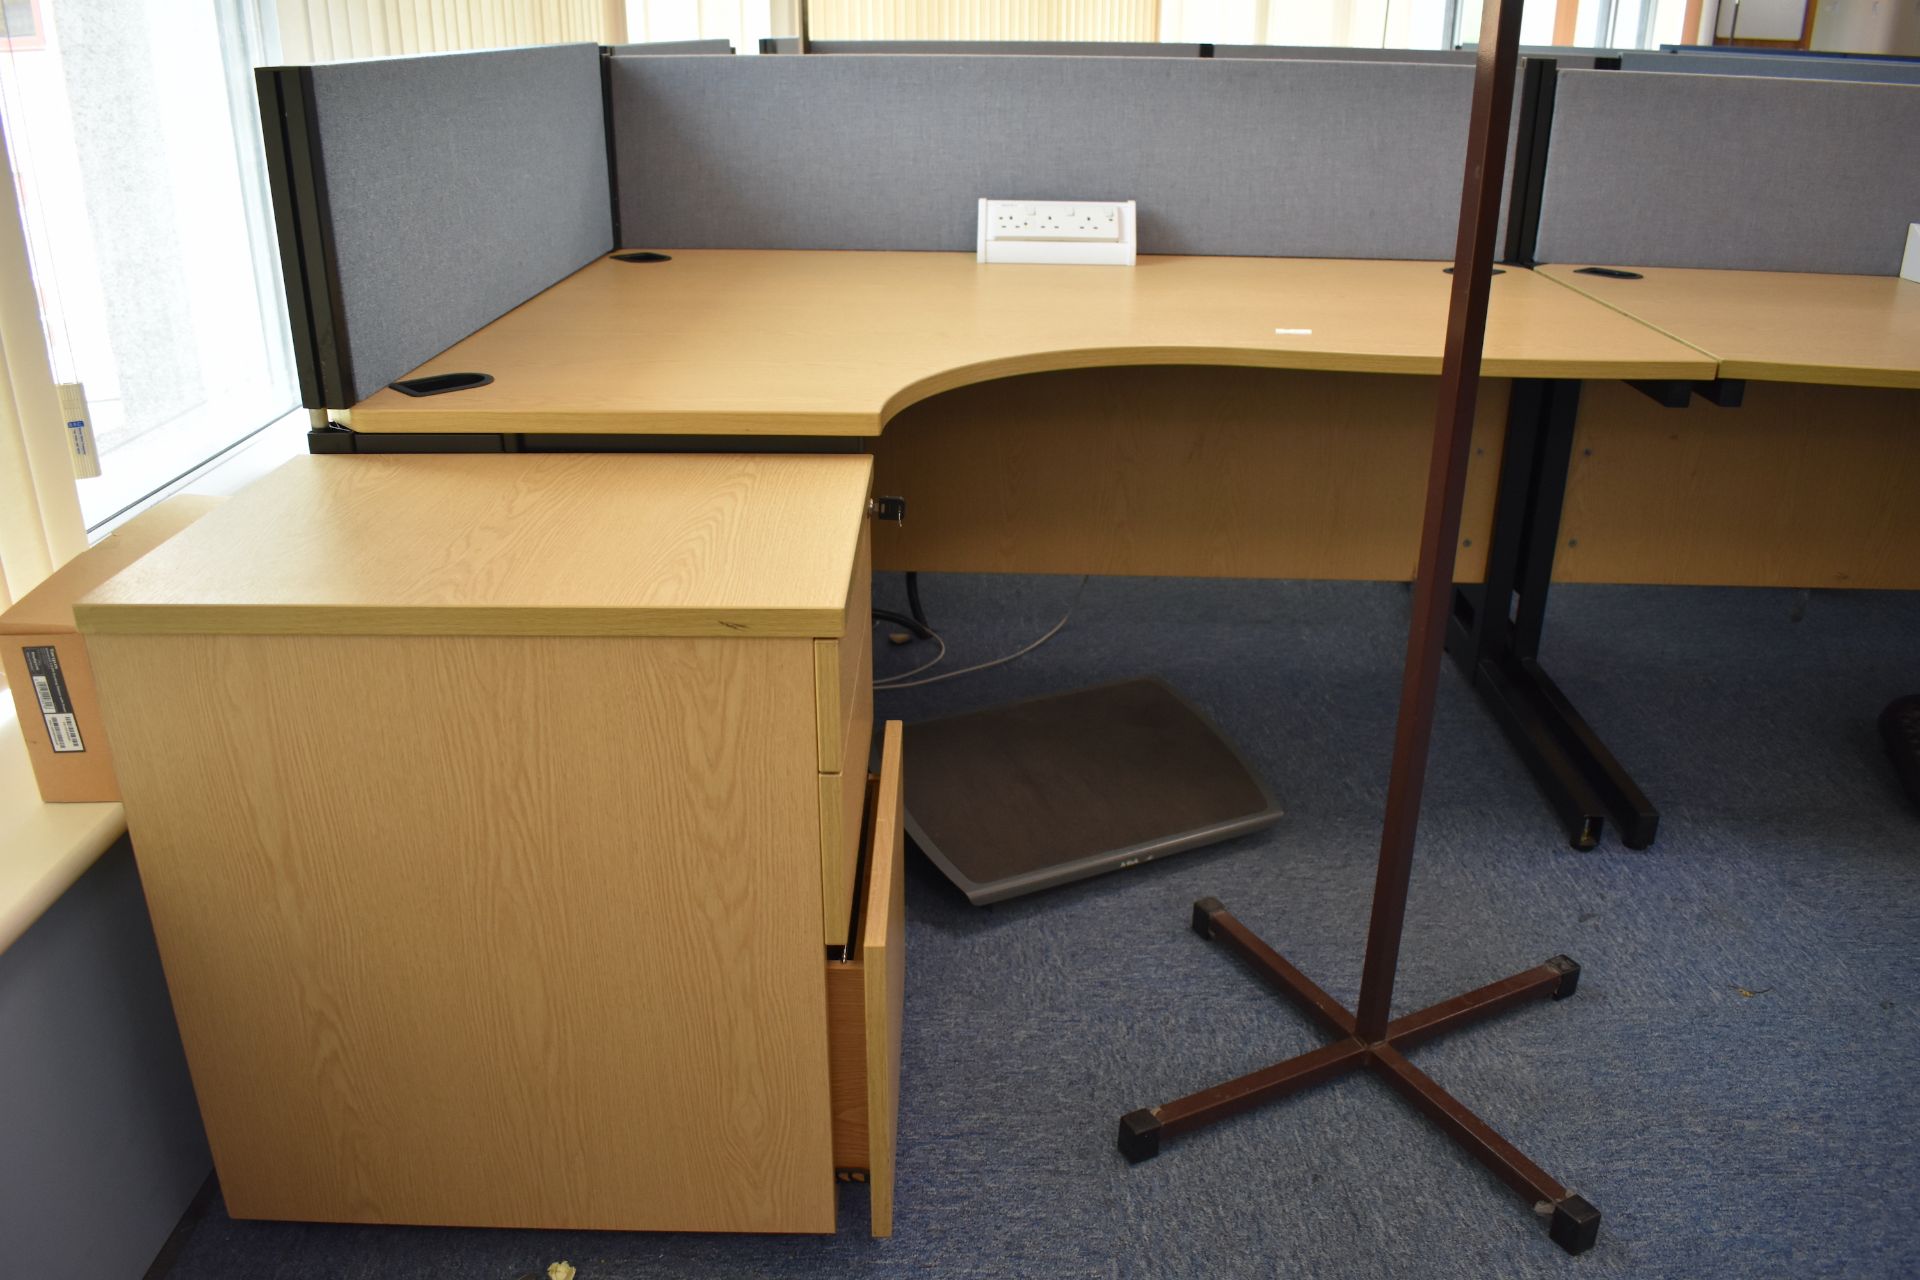 Hard Wired Corner Desk, Desk Screen, Task Chairs, Footrest, Coat Stand, Mobile Pedestal - Image 7 of 16